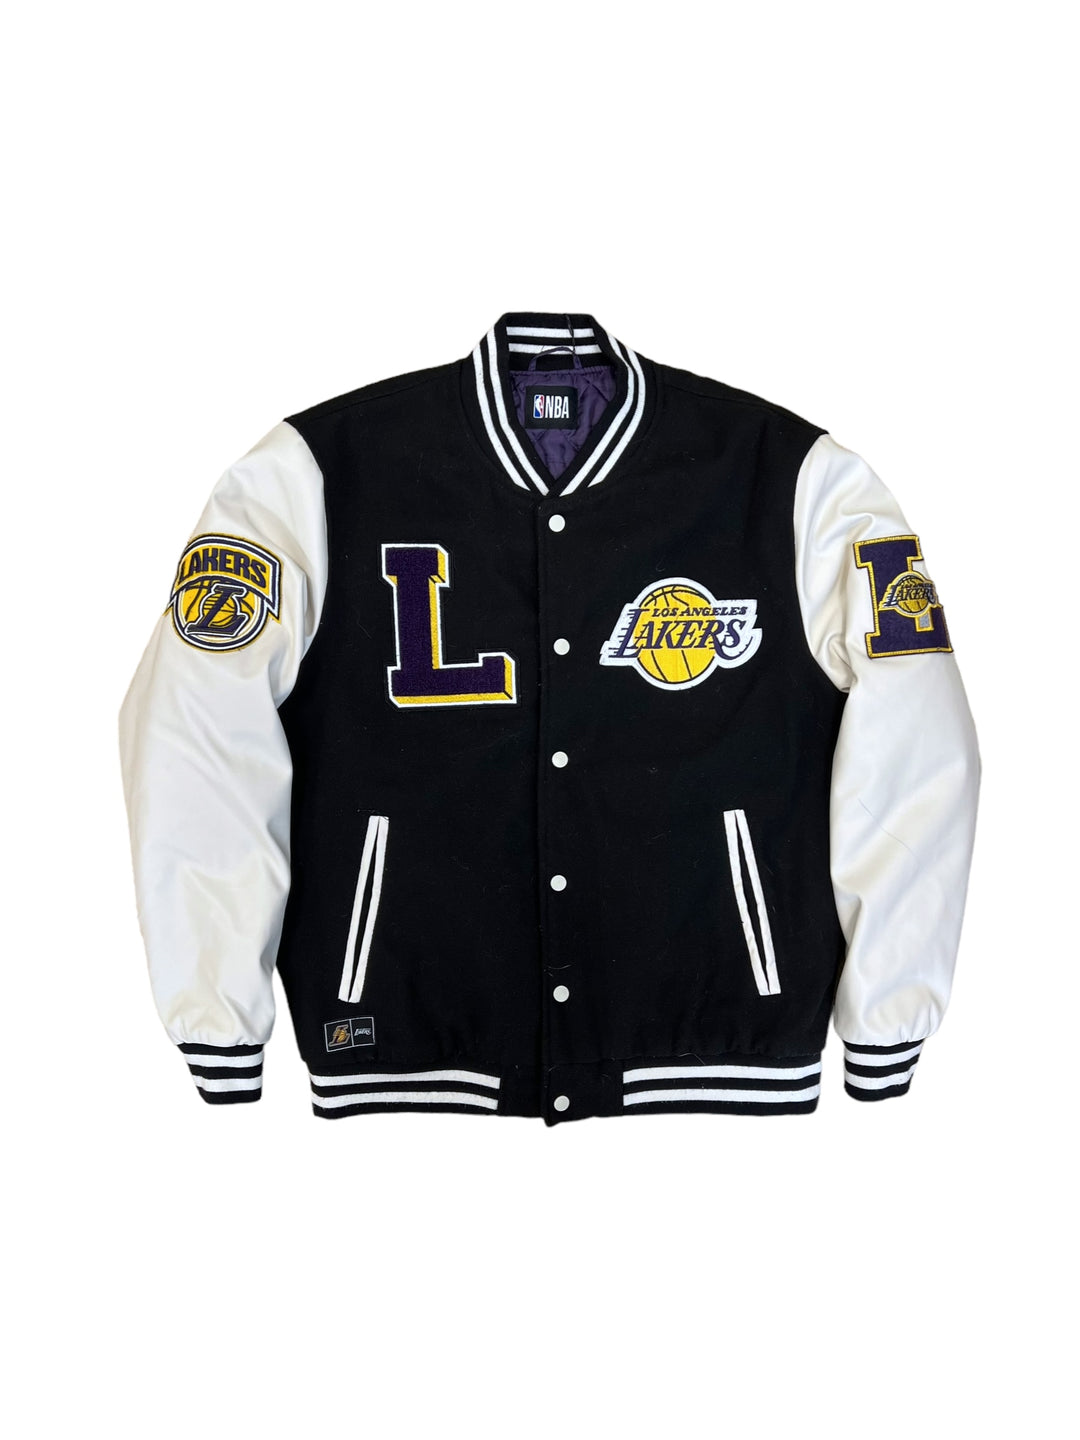 Lakers NBA Black & White Varsity Jacket Men’s large